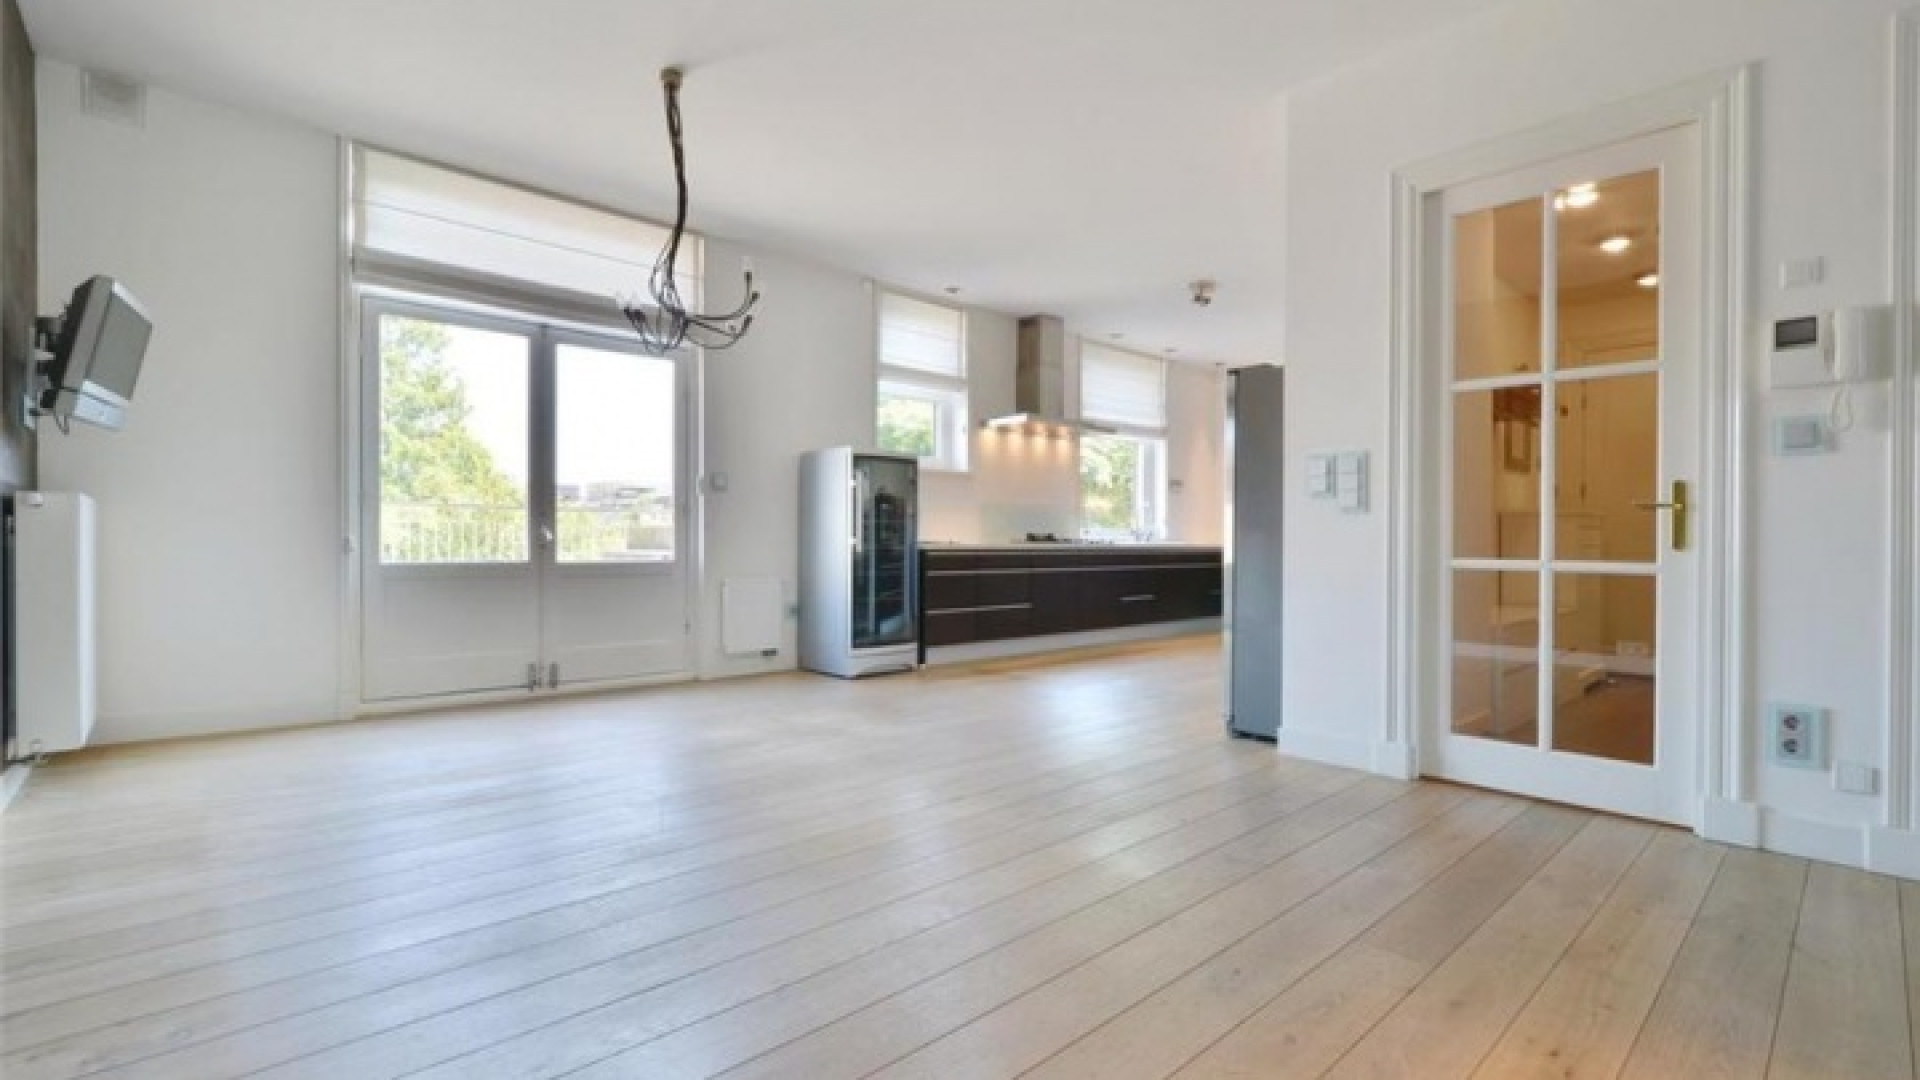 Frank Rijkaard zoekt huurder voor zijn luxe dubbele bovenhuis. Zie foto's 8